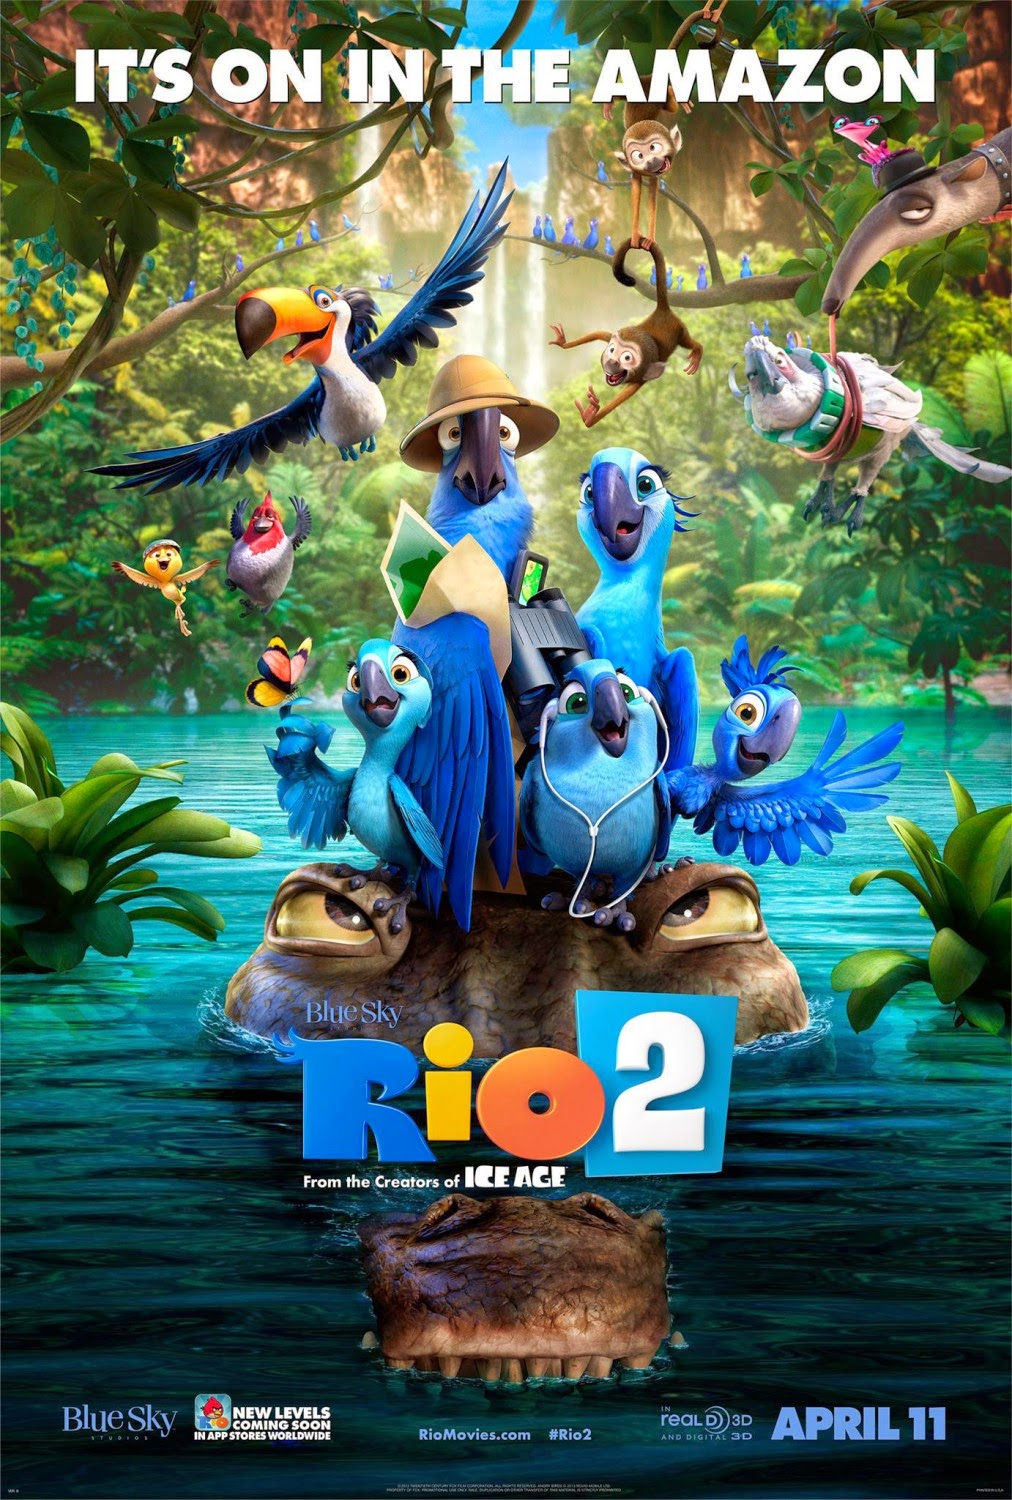 Xem Phim Chú Vẹt Rio 2: Vẹt Đuôi Dài 2 - Rio 2 HD Vietsub mien phi - Poster Full HD